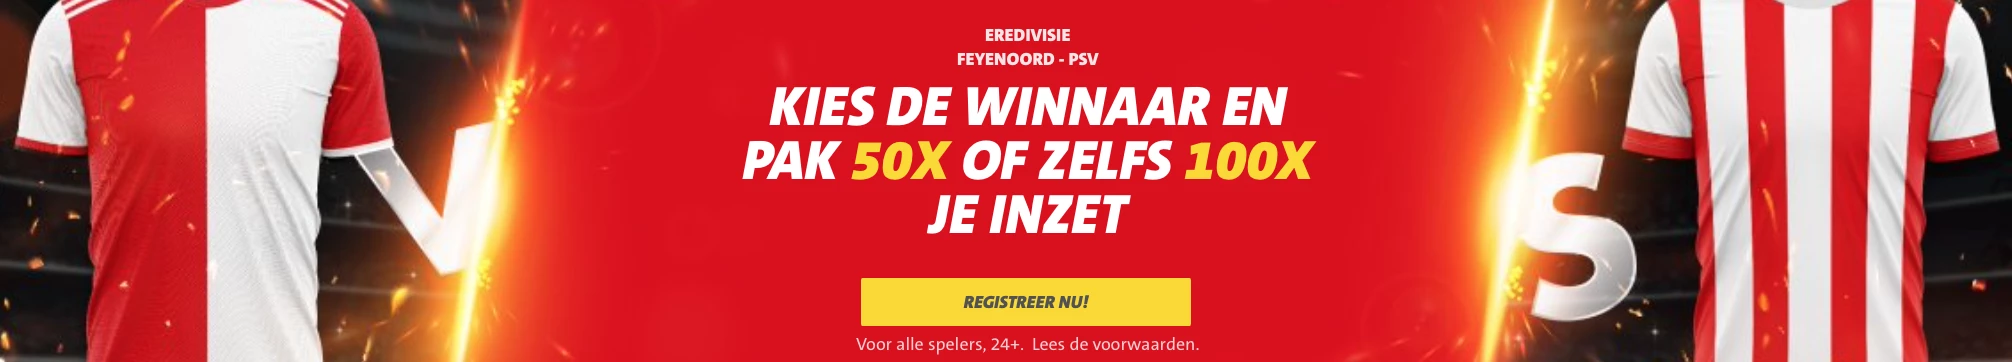 Welkomstactie Feyenoord - PSV: tot 100 keer je inzet